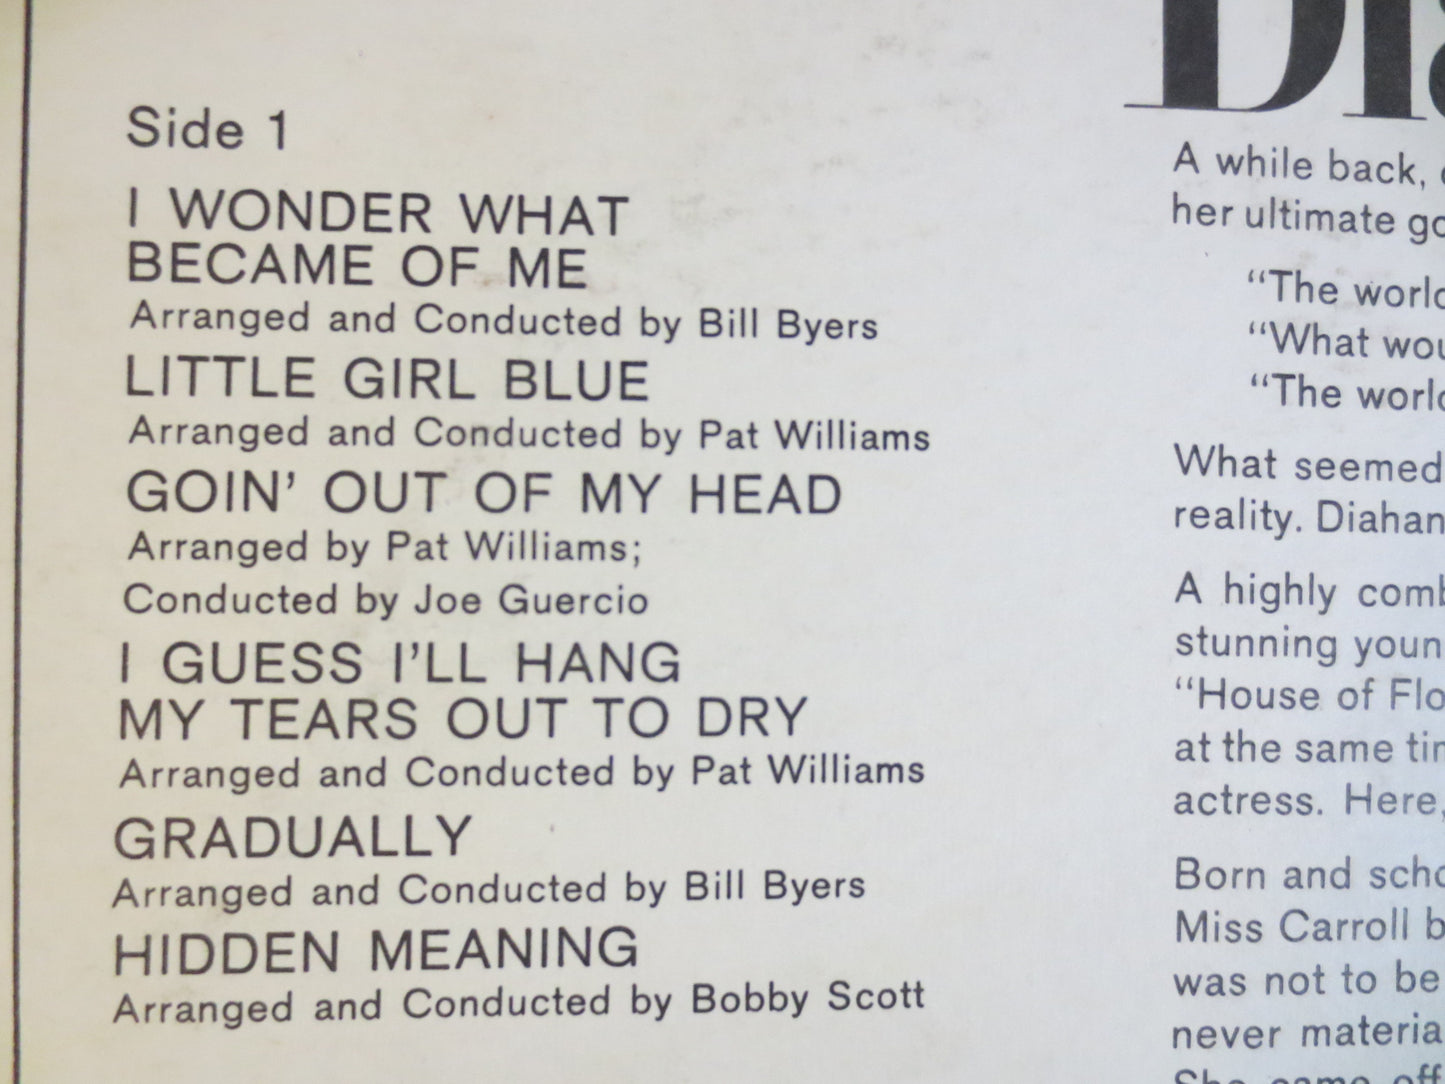 DIAHANN CARROLL Lp, Nobody See's Me Cry, JAZZ Album, Jazz Vinyl, Jazz Lp, Vintage Vinyl, Records, Vinyl Album, 1966 Records